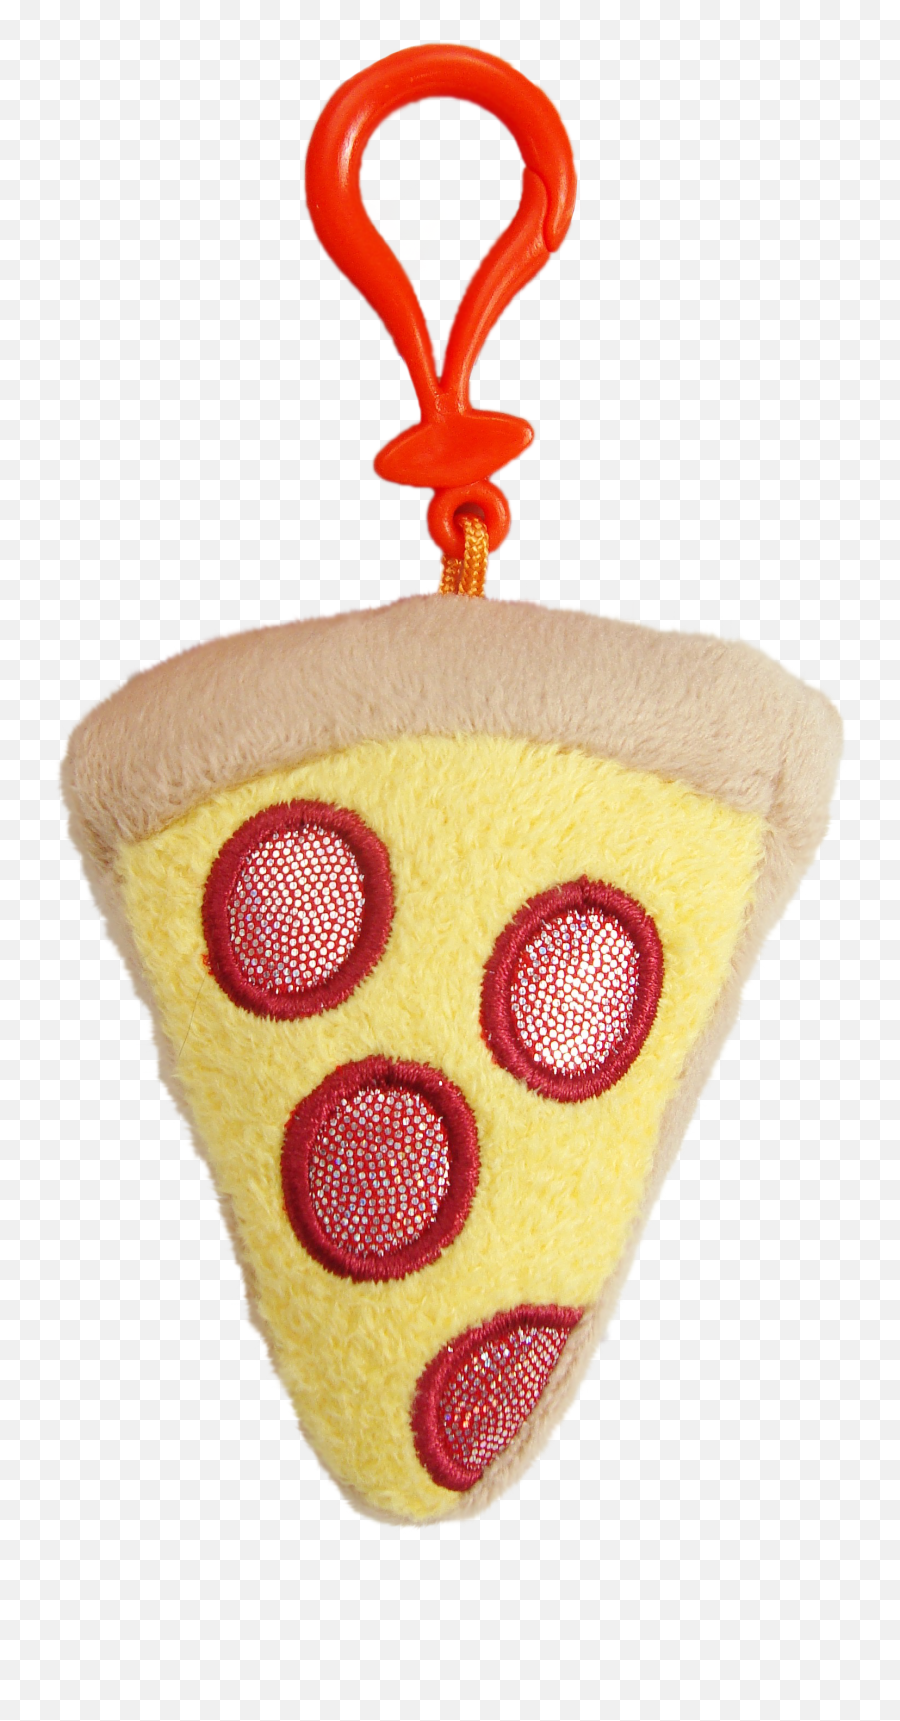 Glitzy Clips Toys - Walmartcom Emoji,Plain Pizza Emoji